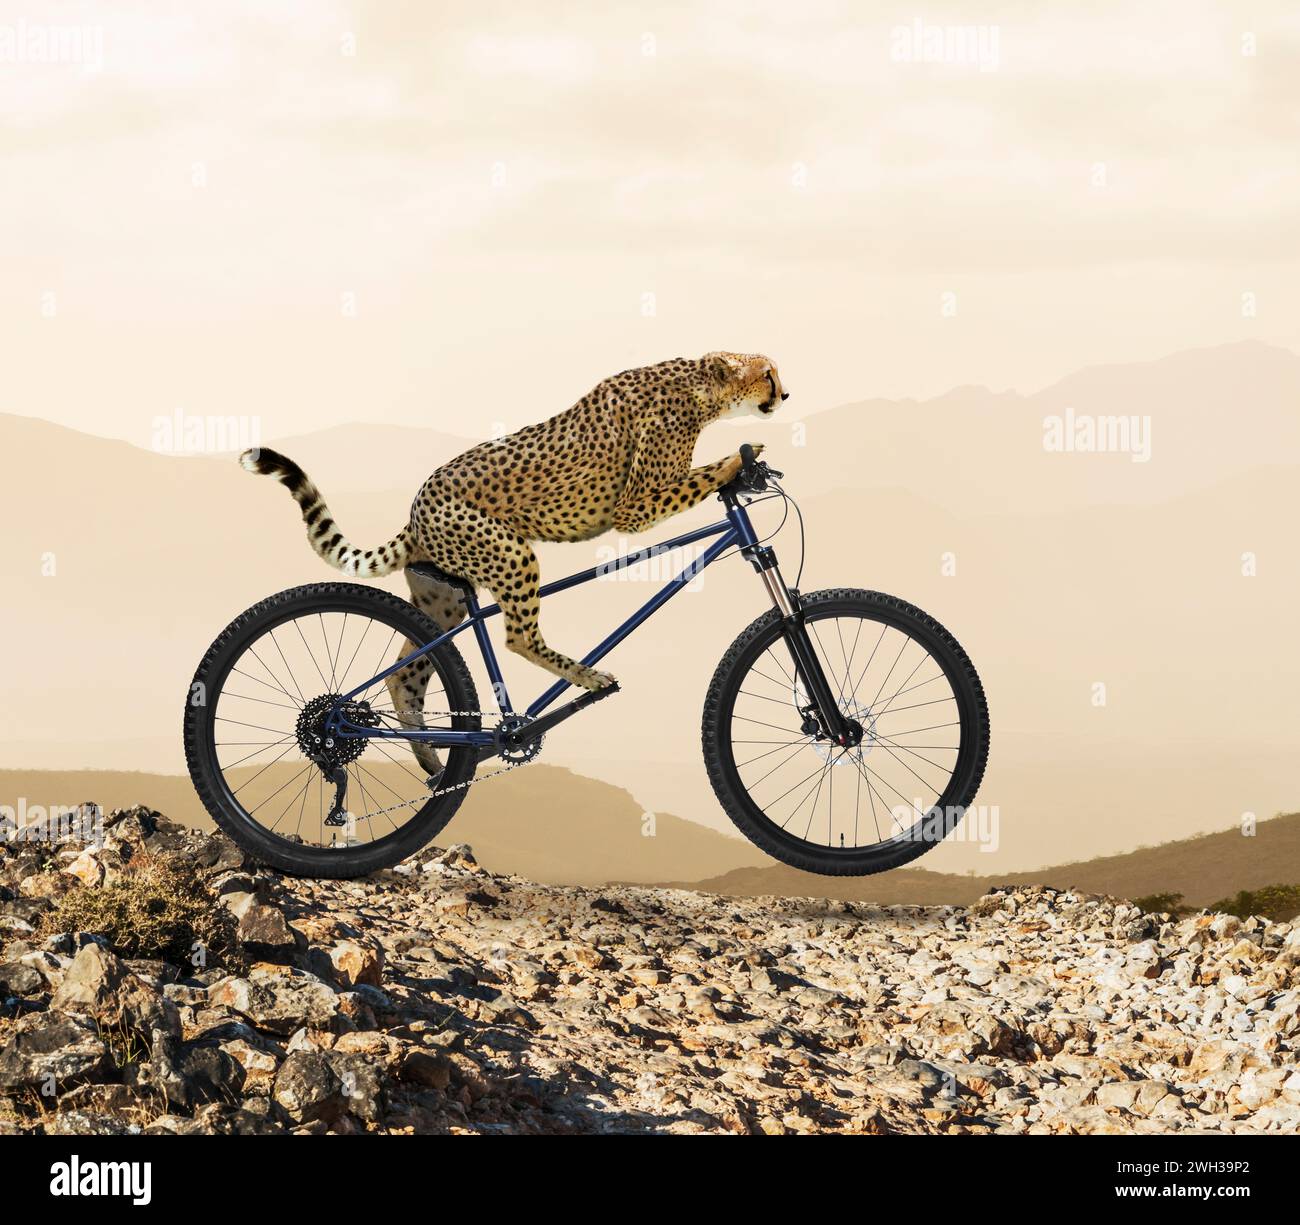 Un guépard démontre avec humour les concepts de vitesse, d'innovation et de technologie alors qu'il roule à vélo sur un terrain accidenté. Banque D'Images